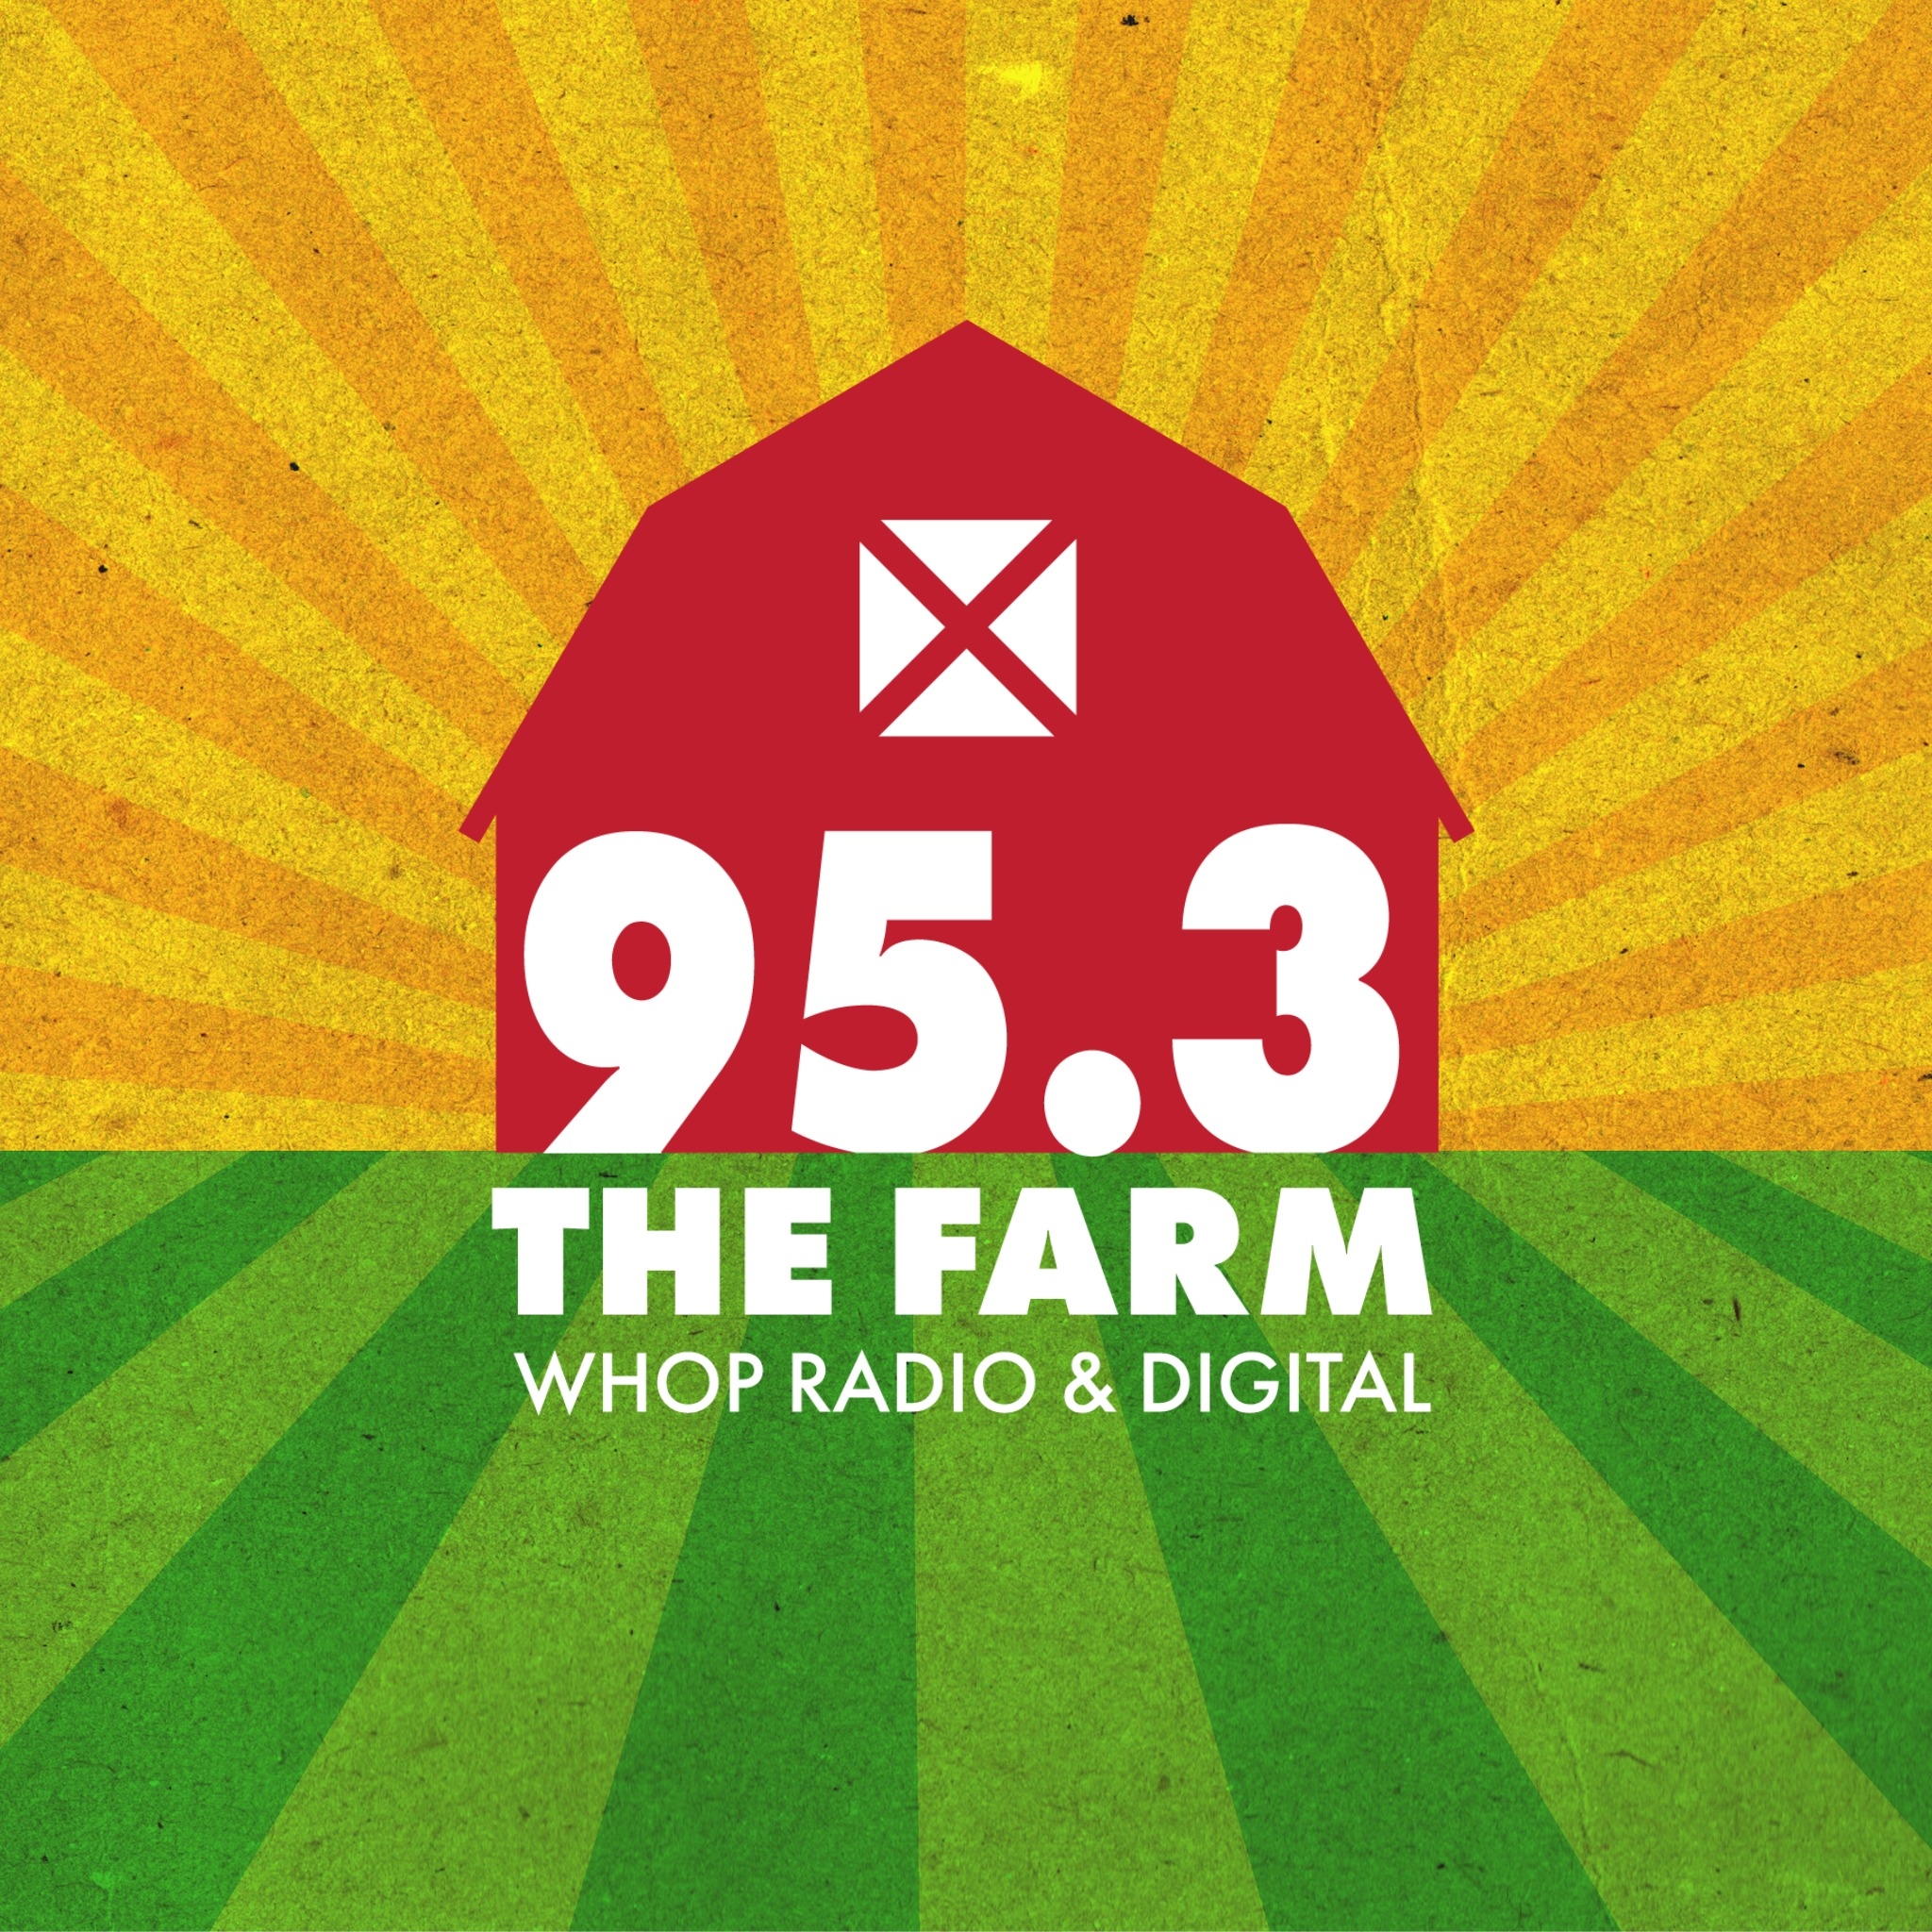 WHOP 95.3 The Farm